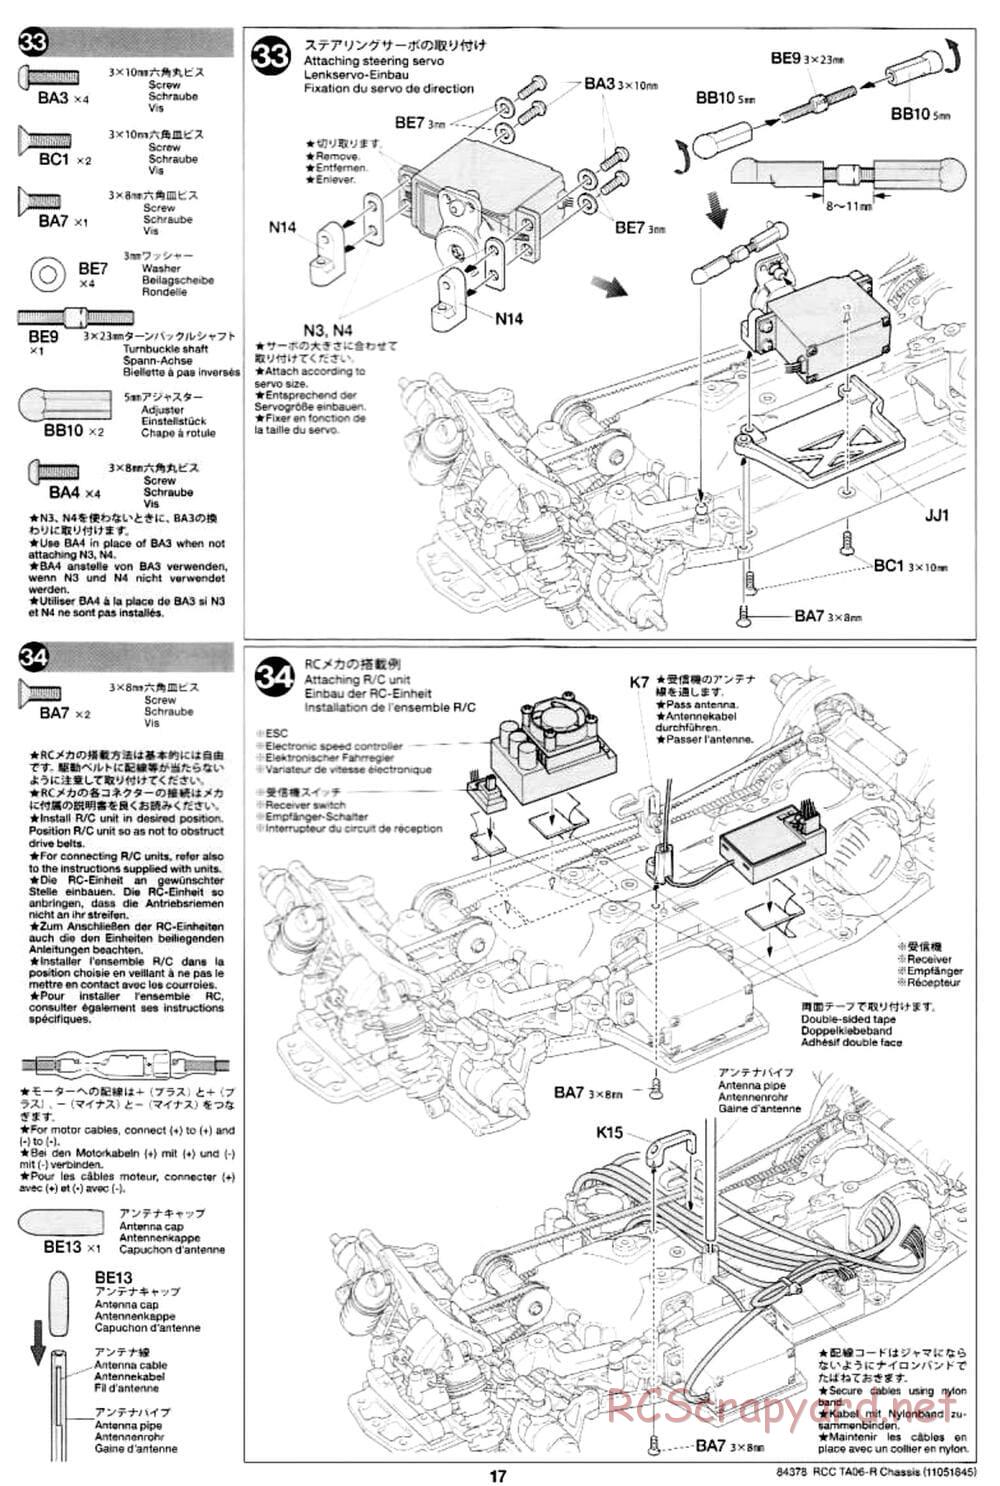 Tamiya - TA06-R Chassis - Manual - Page 17